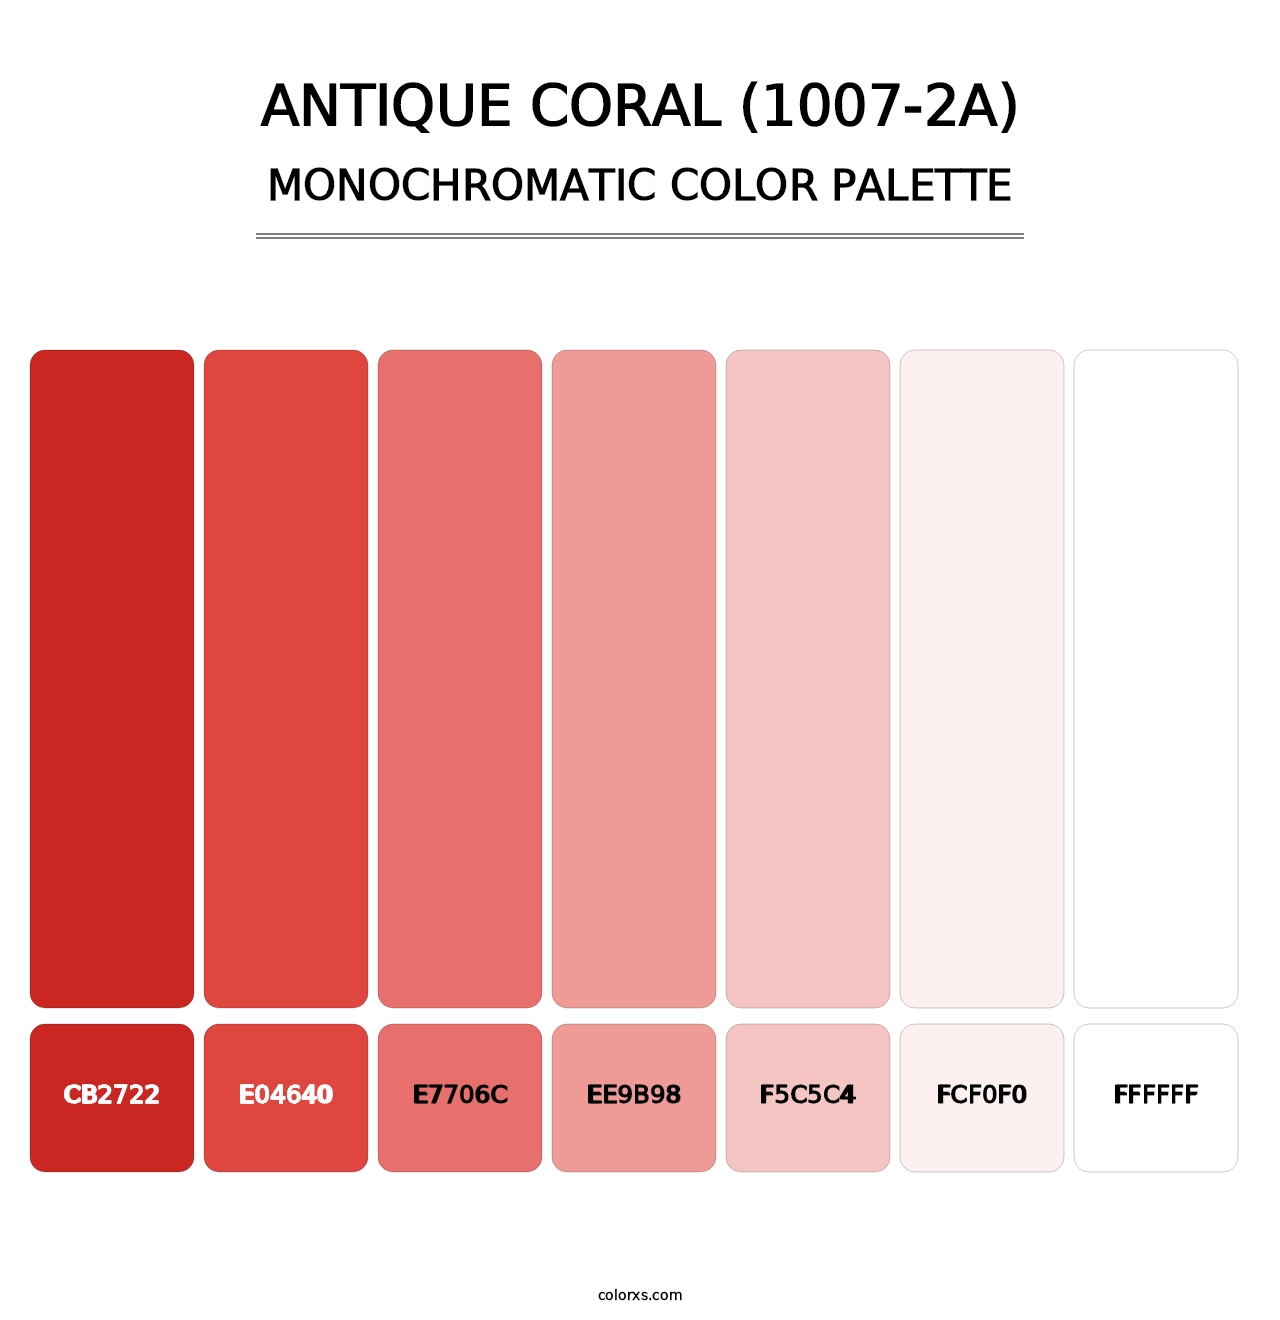 Antique Coral (1007-2A) - Monochromatic Color Palette